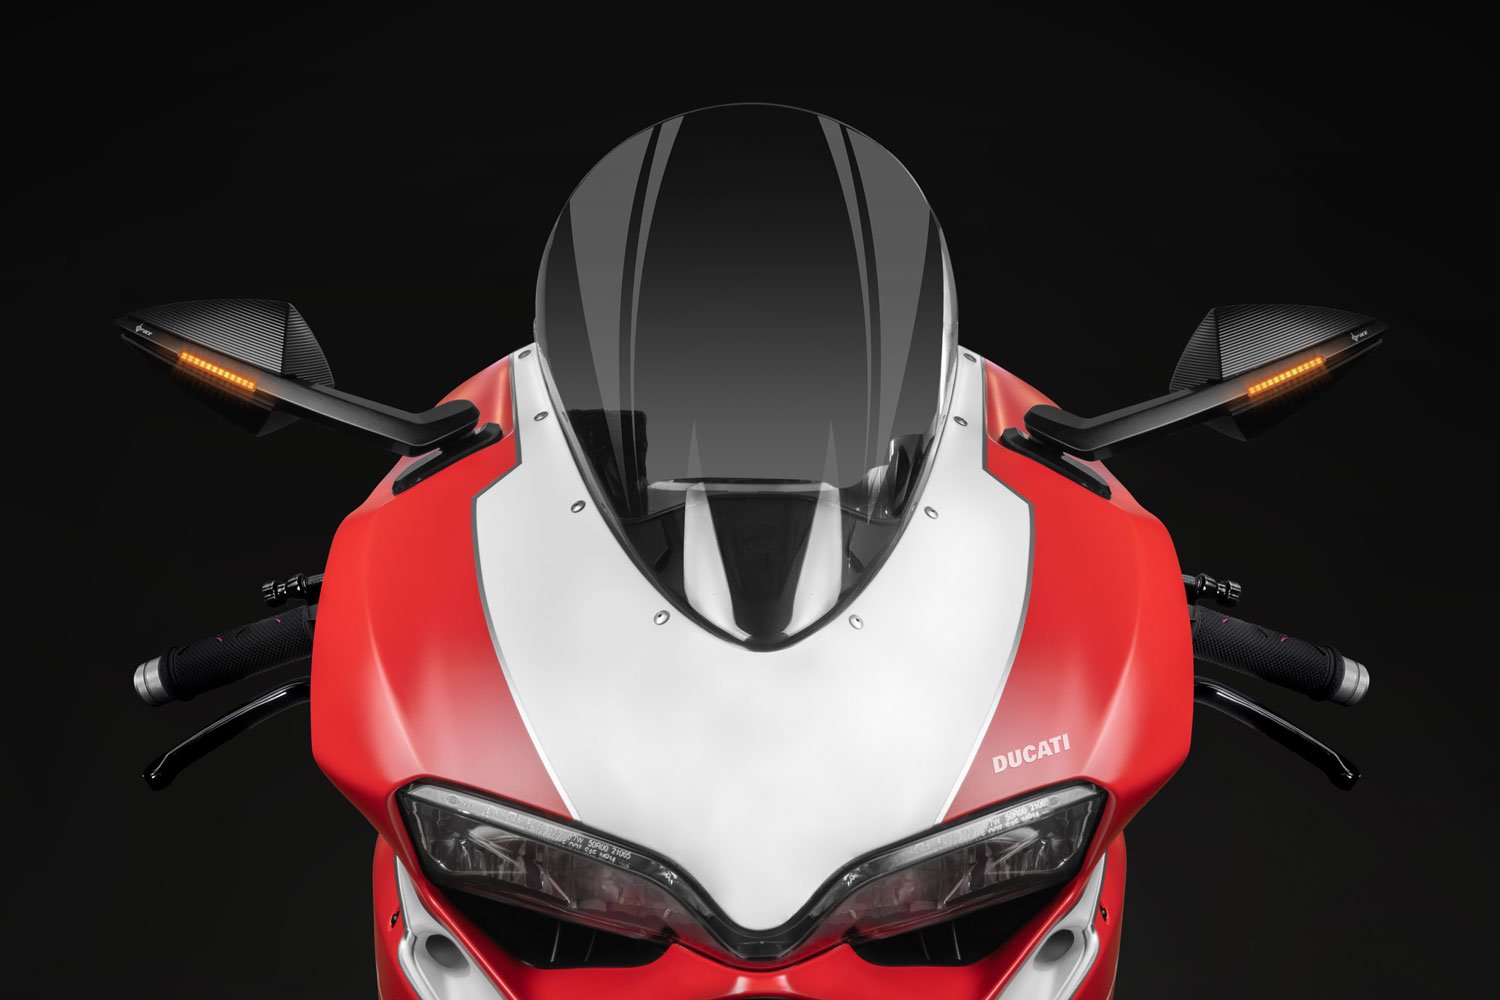 35937円 海外最新 Mirror 琥珀色のターンシグナルライトリアビューミラーフィットDucati 1299 Panigale S 15-16 Amber Turn Signal Light Rear View Mirrors Fit For Ducati